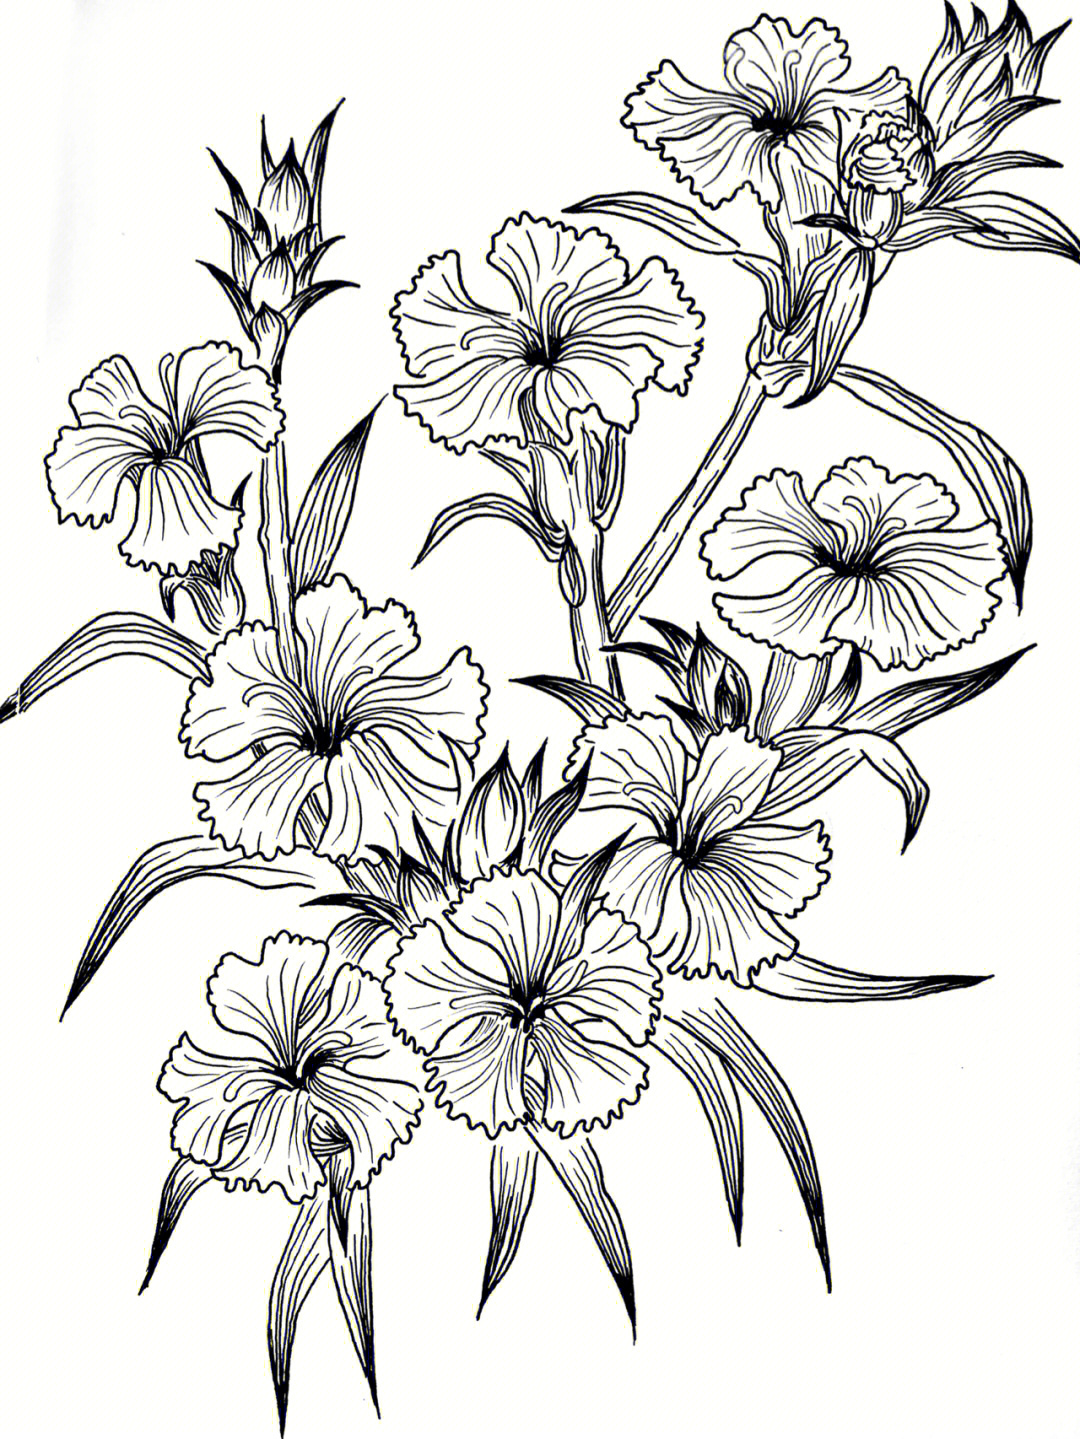 100张花卉线描图 临摹图片